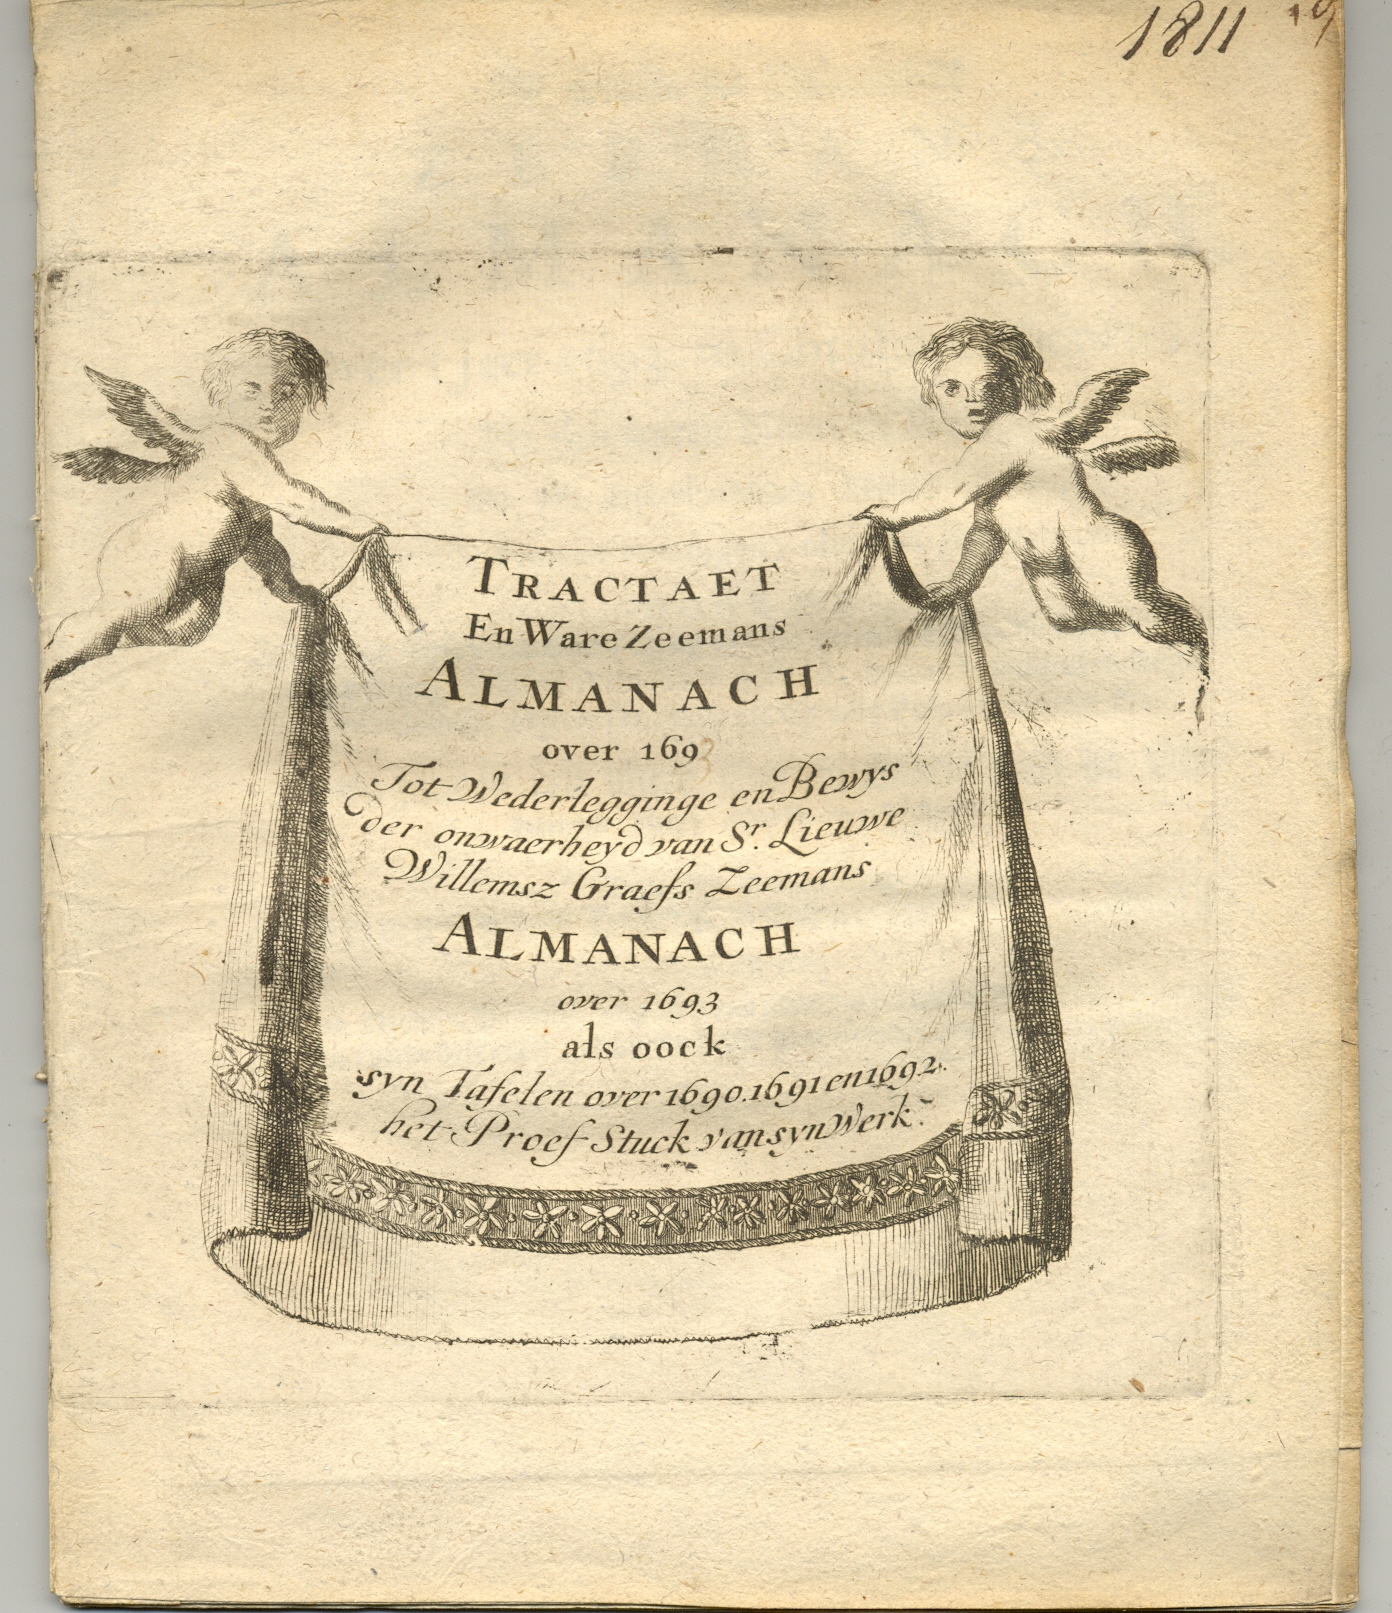 Tractaet en ware Zeemans almanach over 1693, titelblad